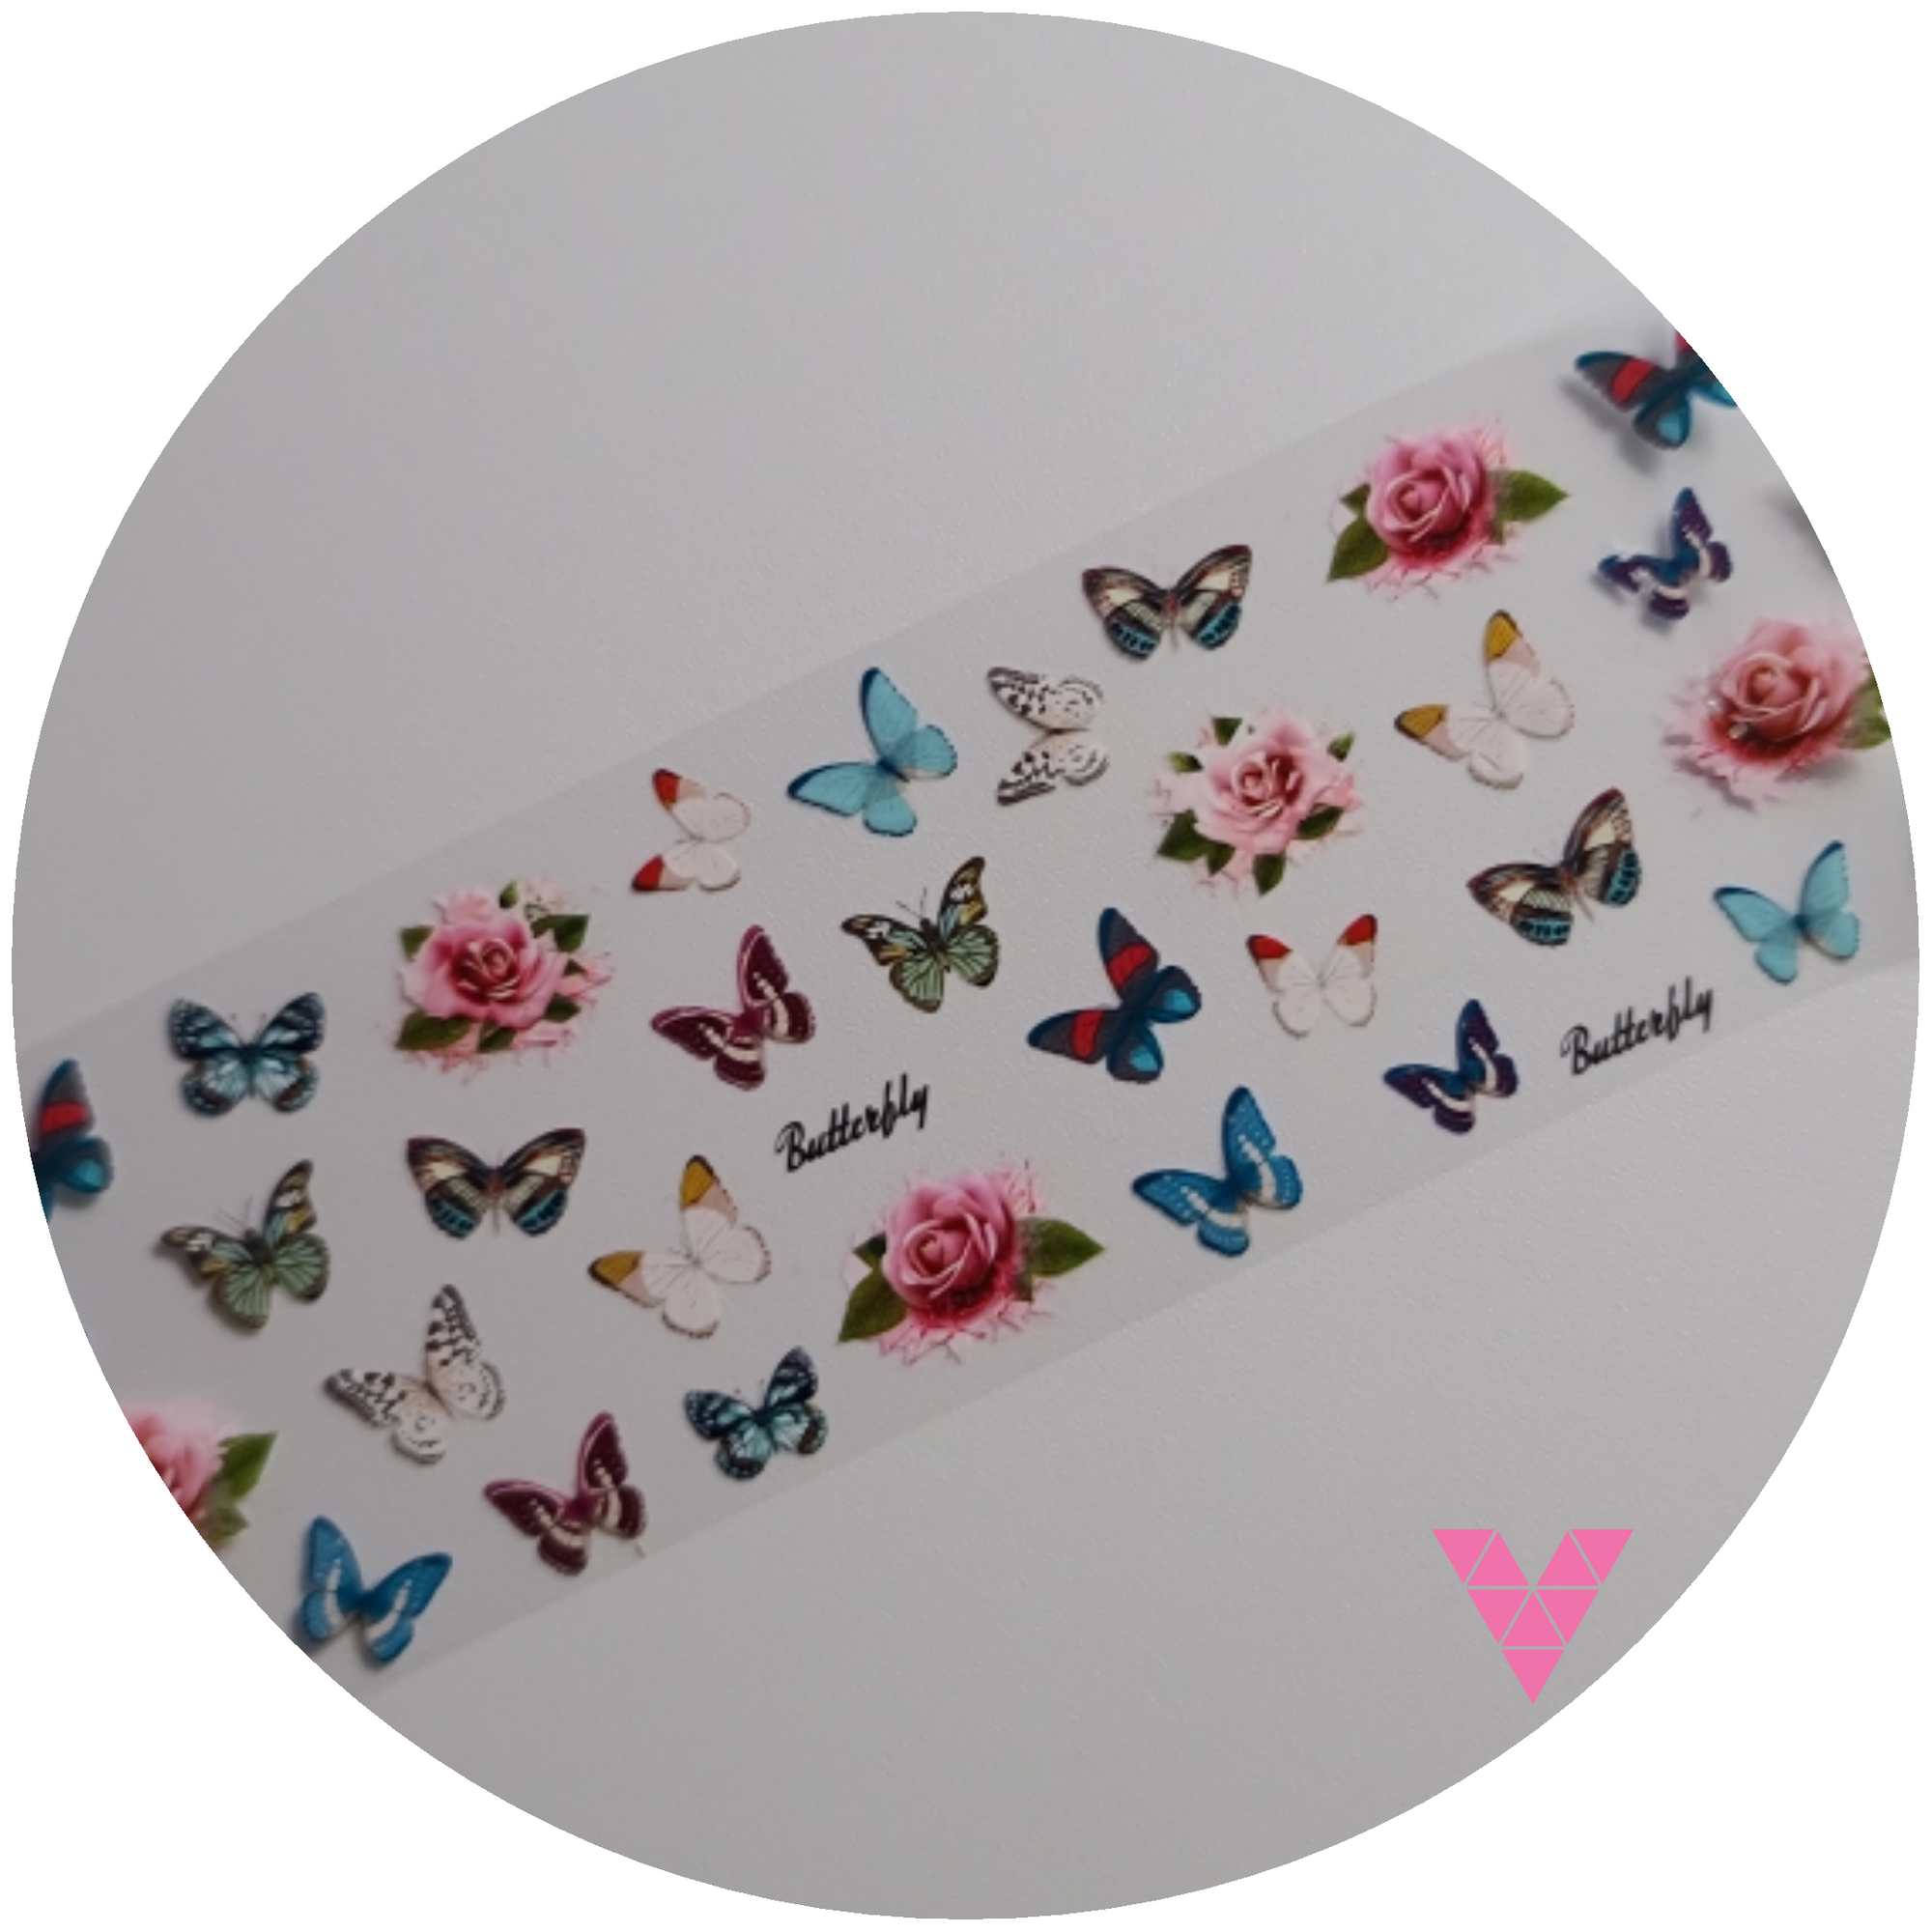 Butterfly Foil Set 2